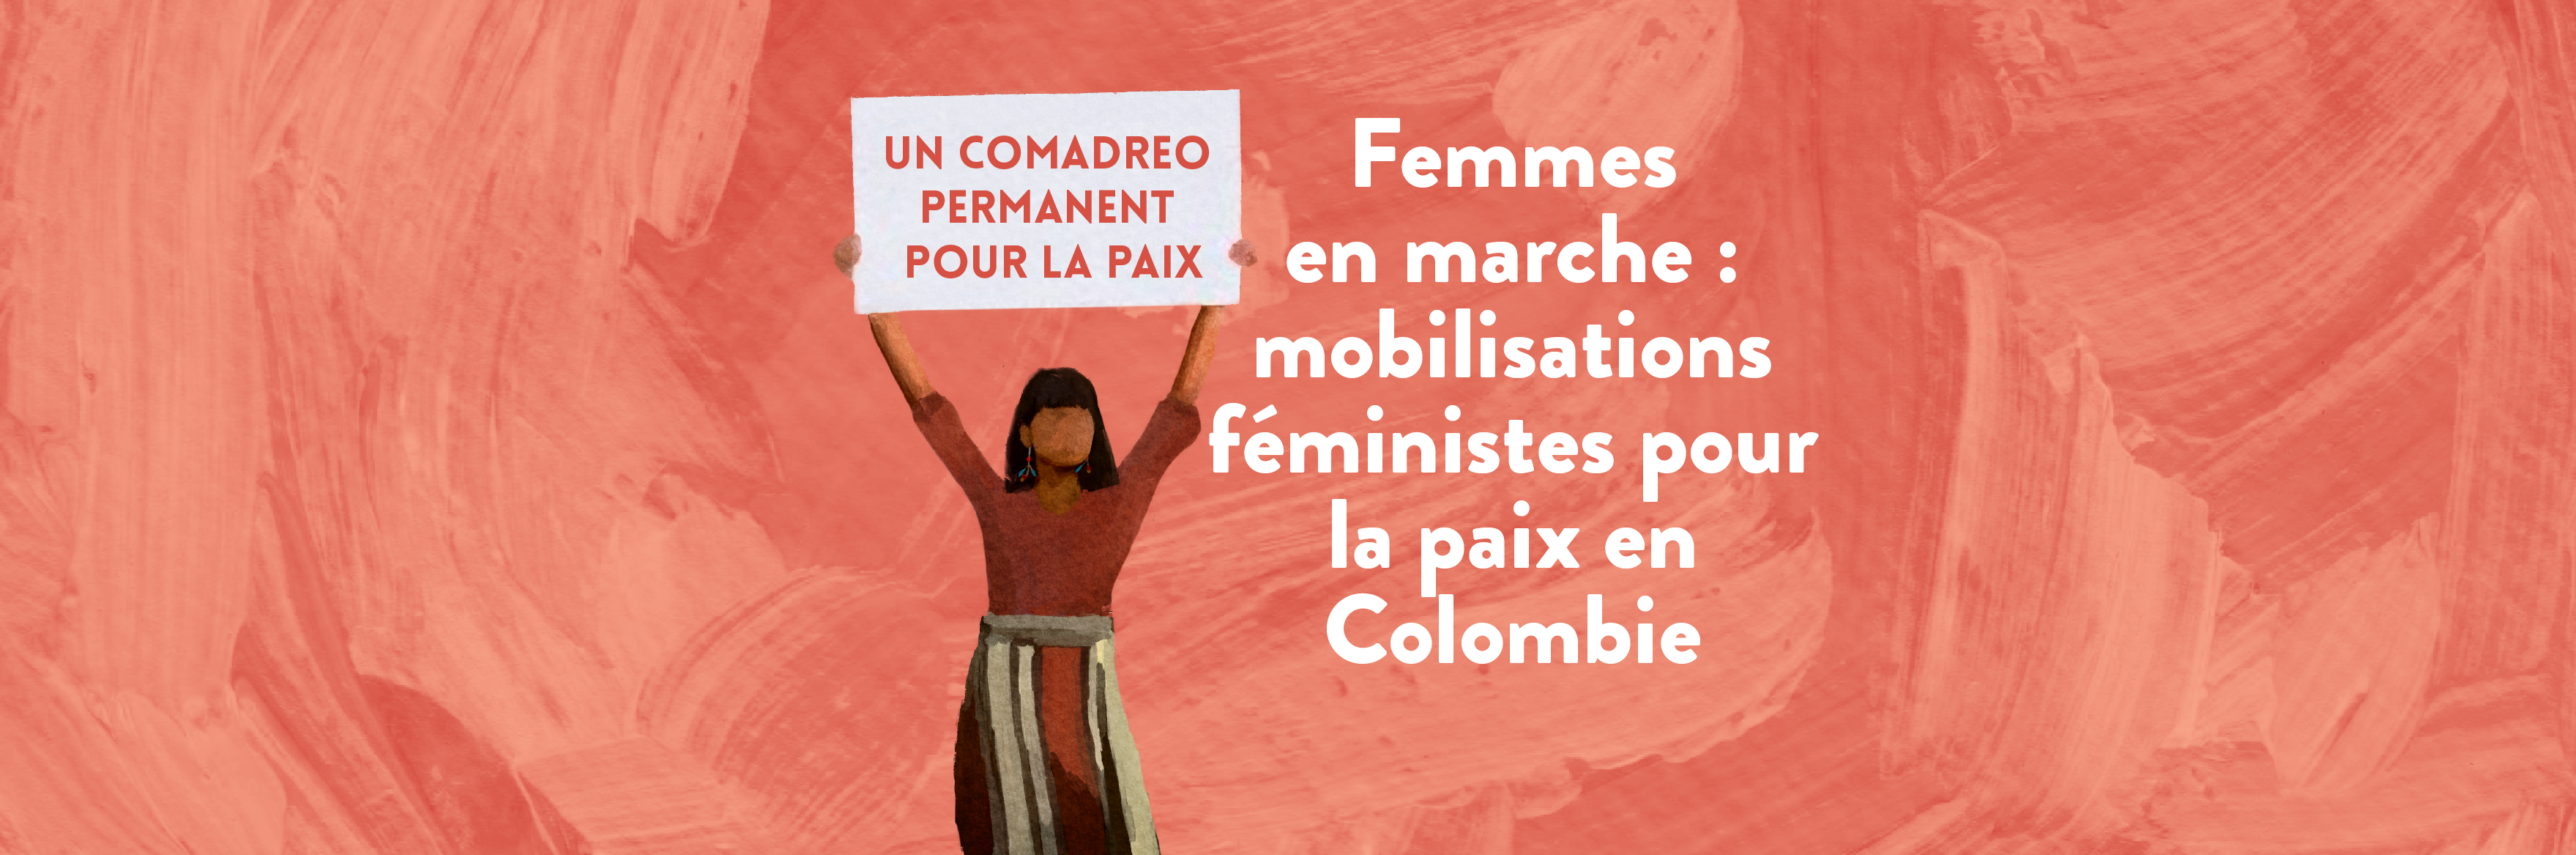 Femmes en marche : mobilisations féministes pour la paix en Colombie 